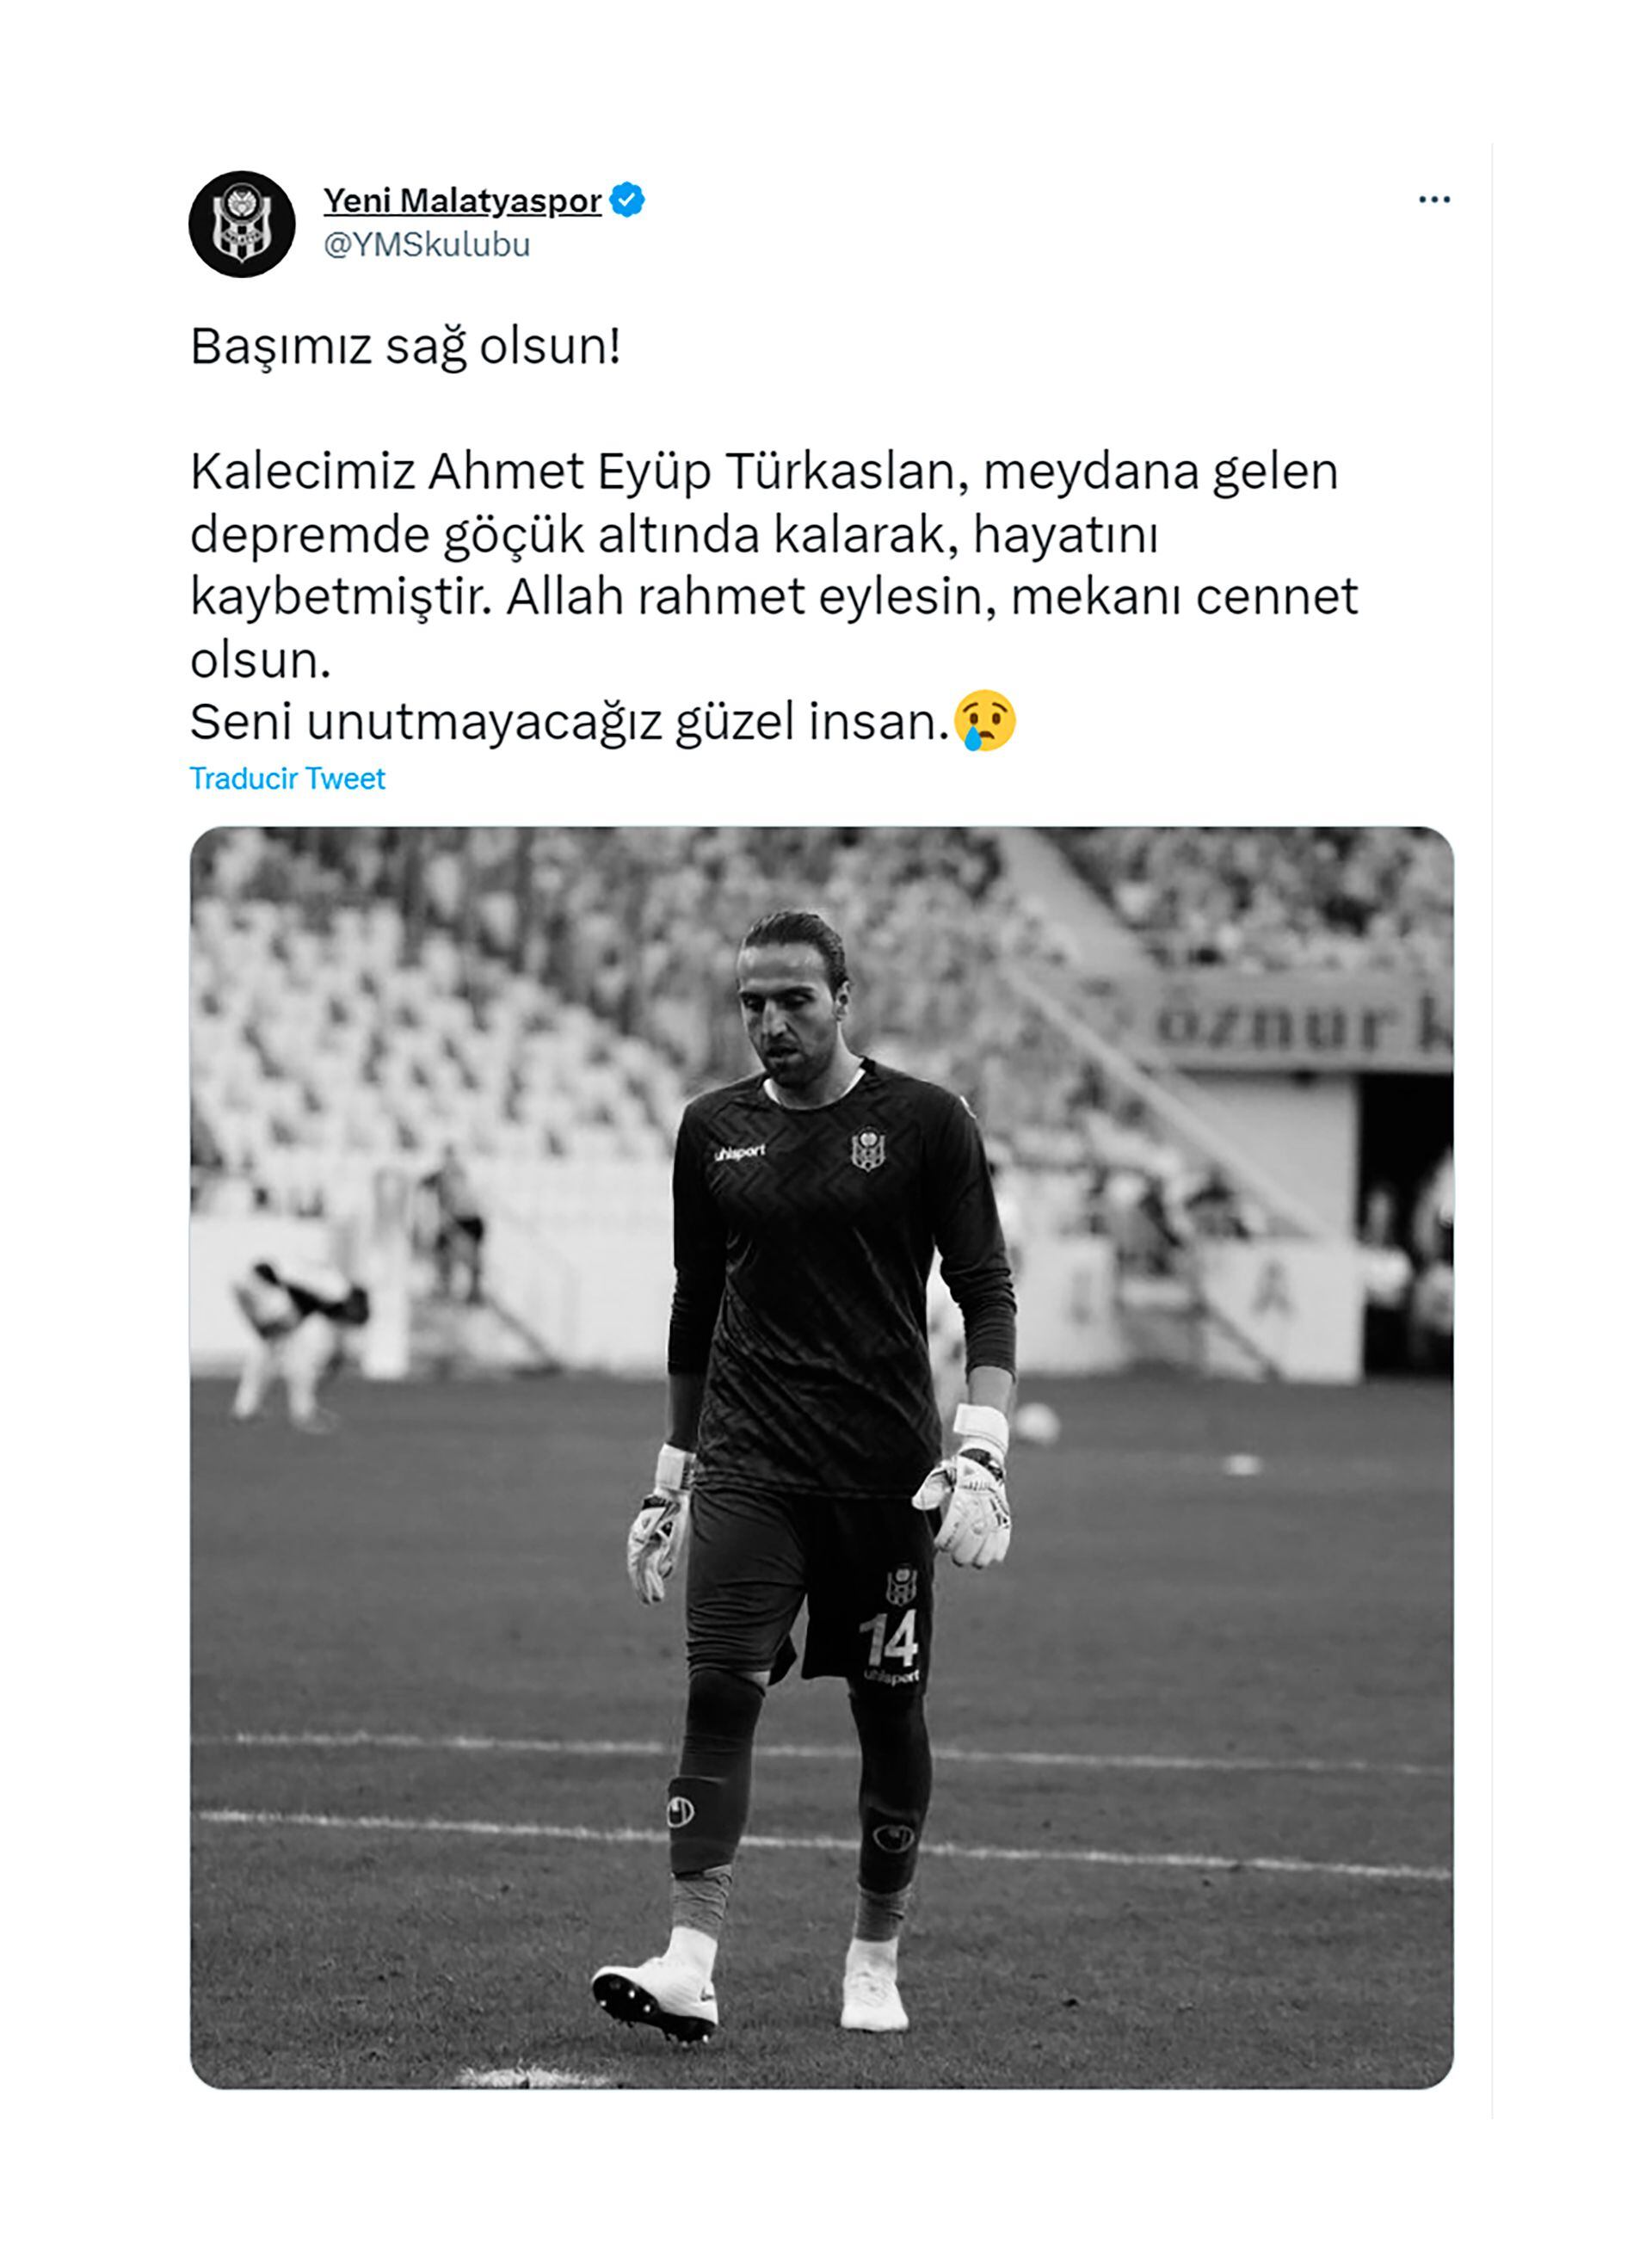 La emoción del entrenador Yilmaz Vural al informar que el arquero suplente del equipo falleció en el terremoto